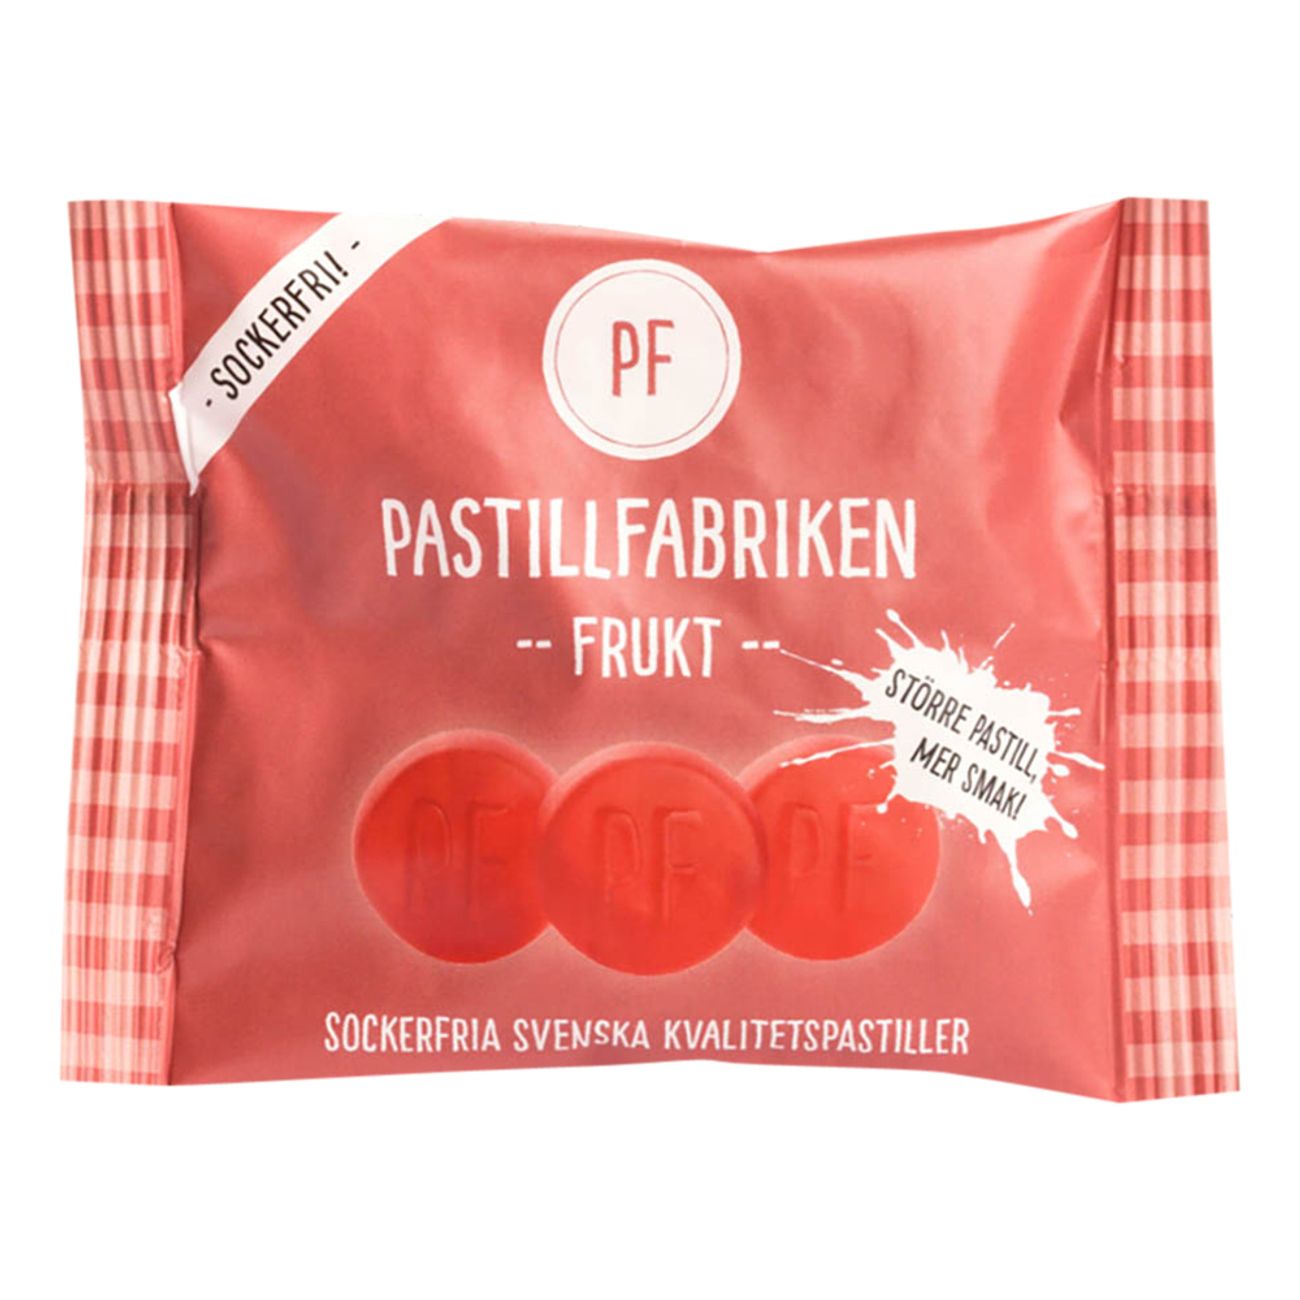 pastillfabriken-frukt-pase-2